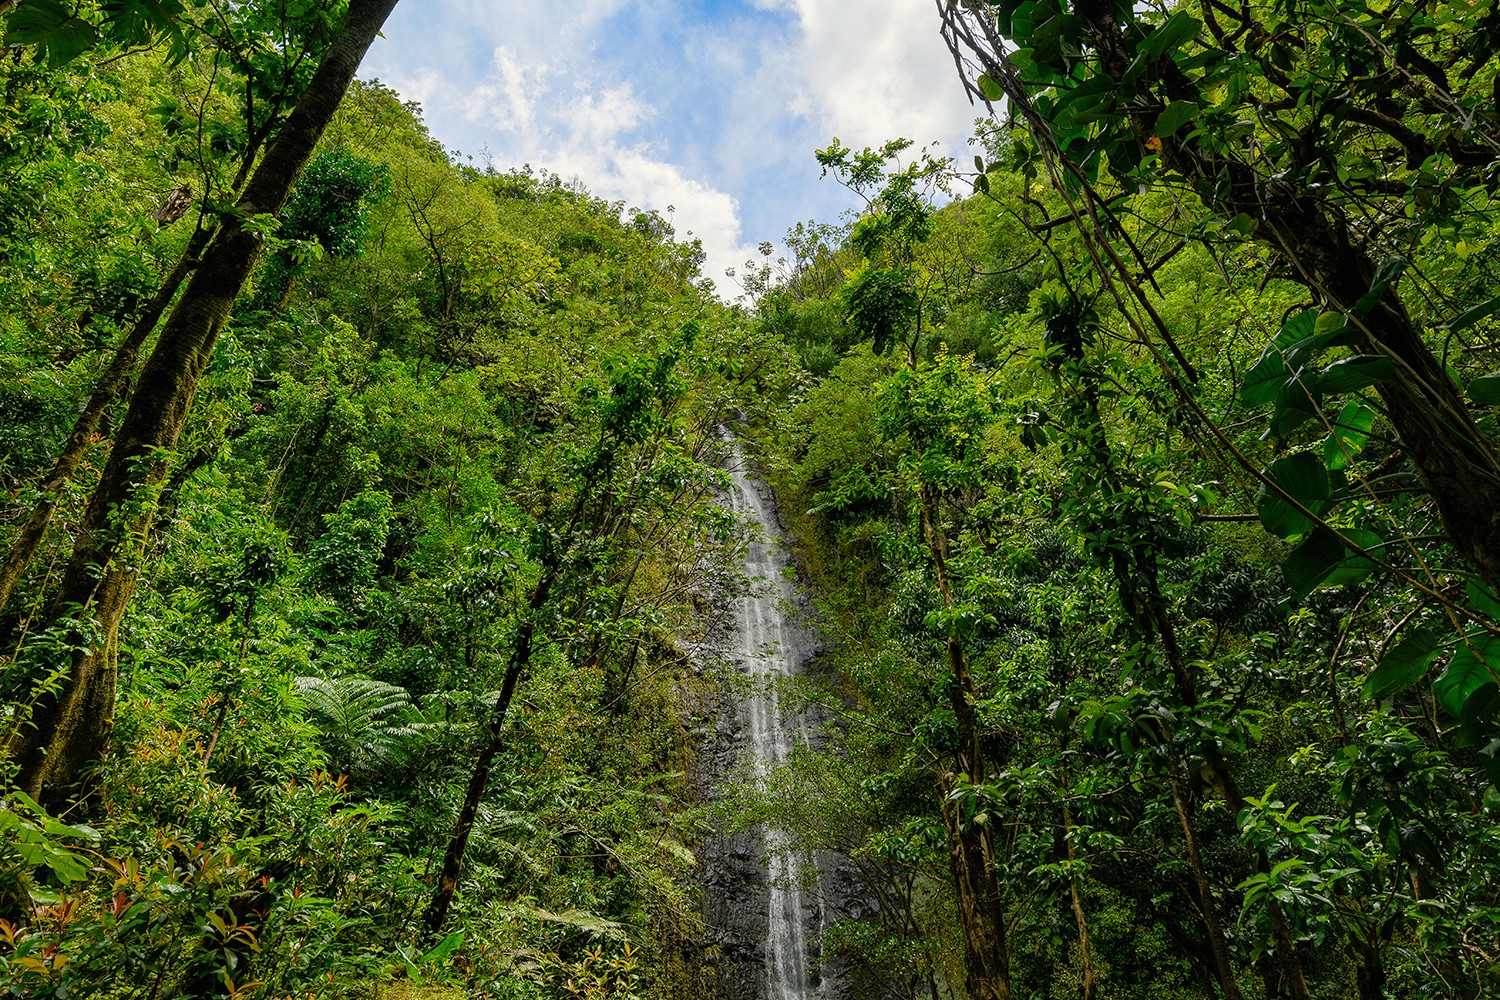 ハワイで最も息をのむような滝の8つ 